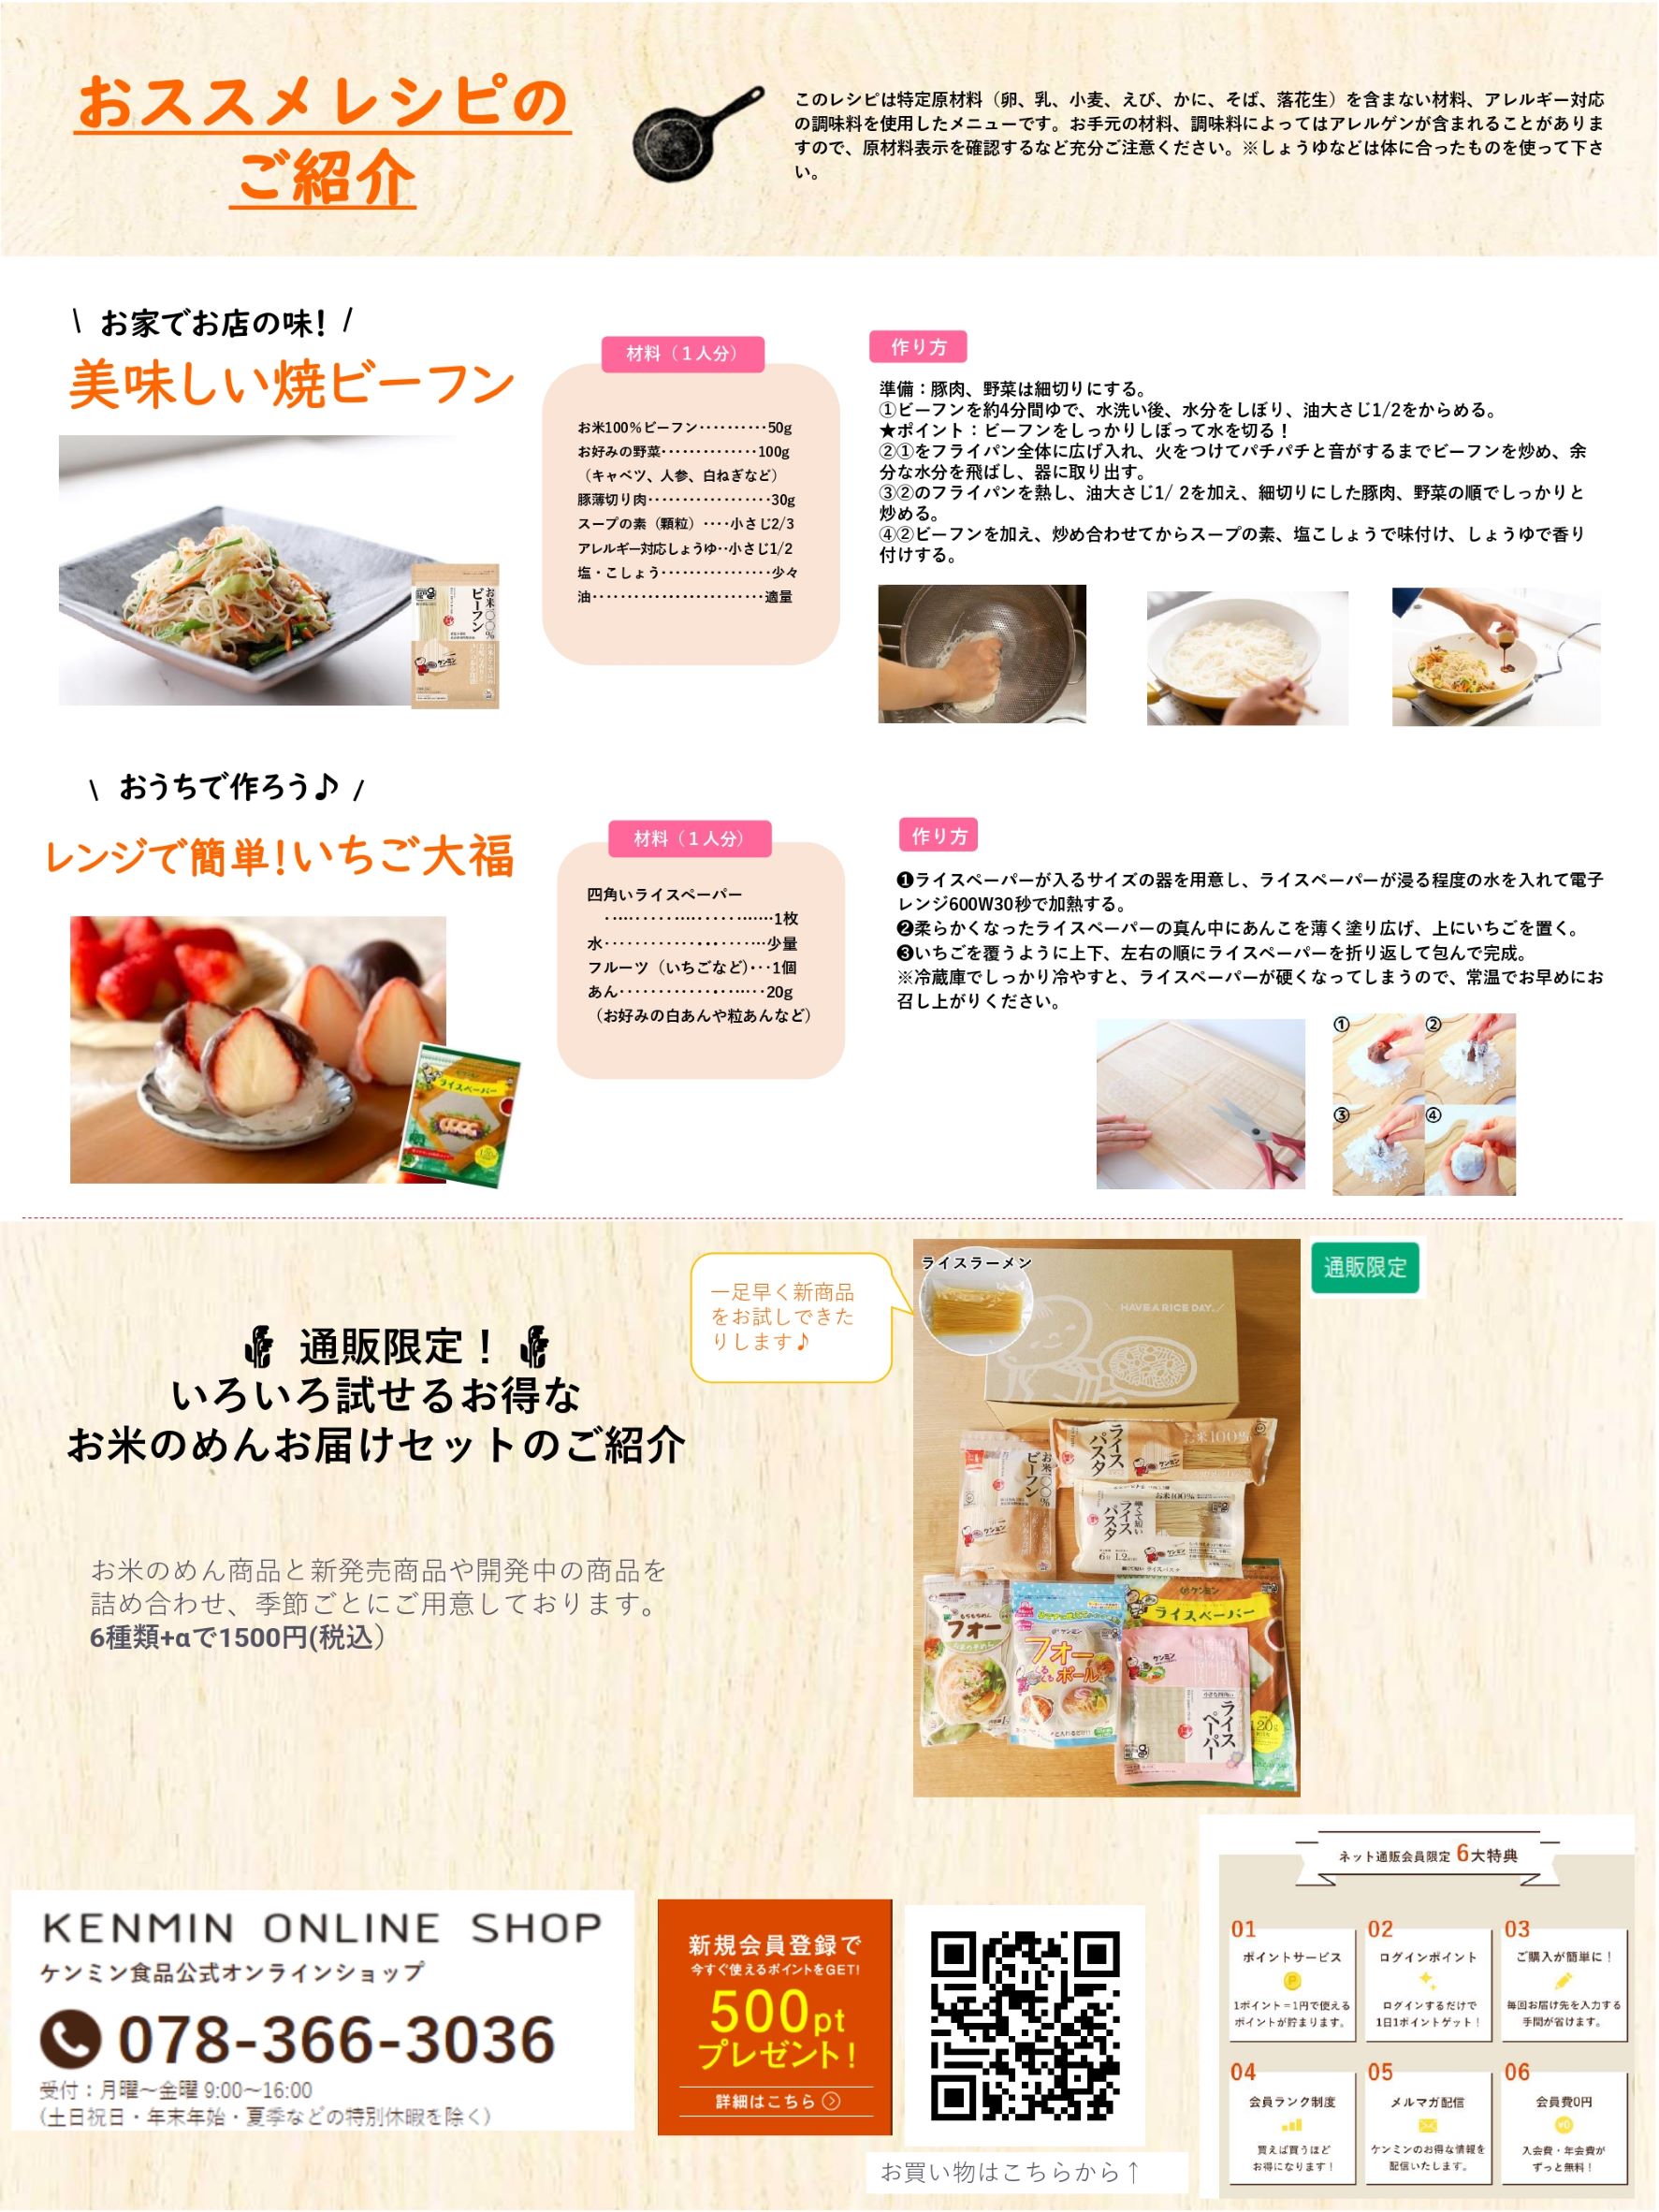 ケンミン食品紹介資料①22.02 _page-0002